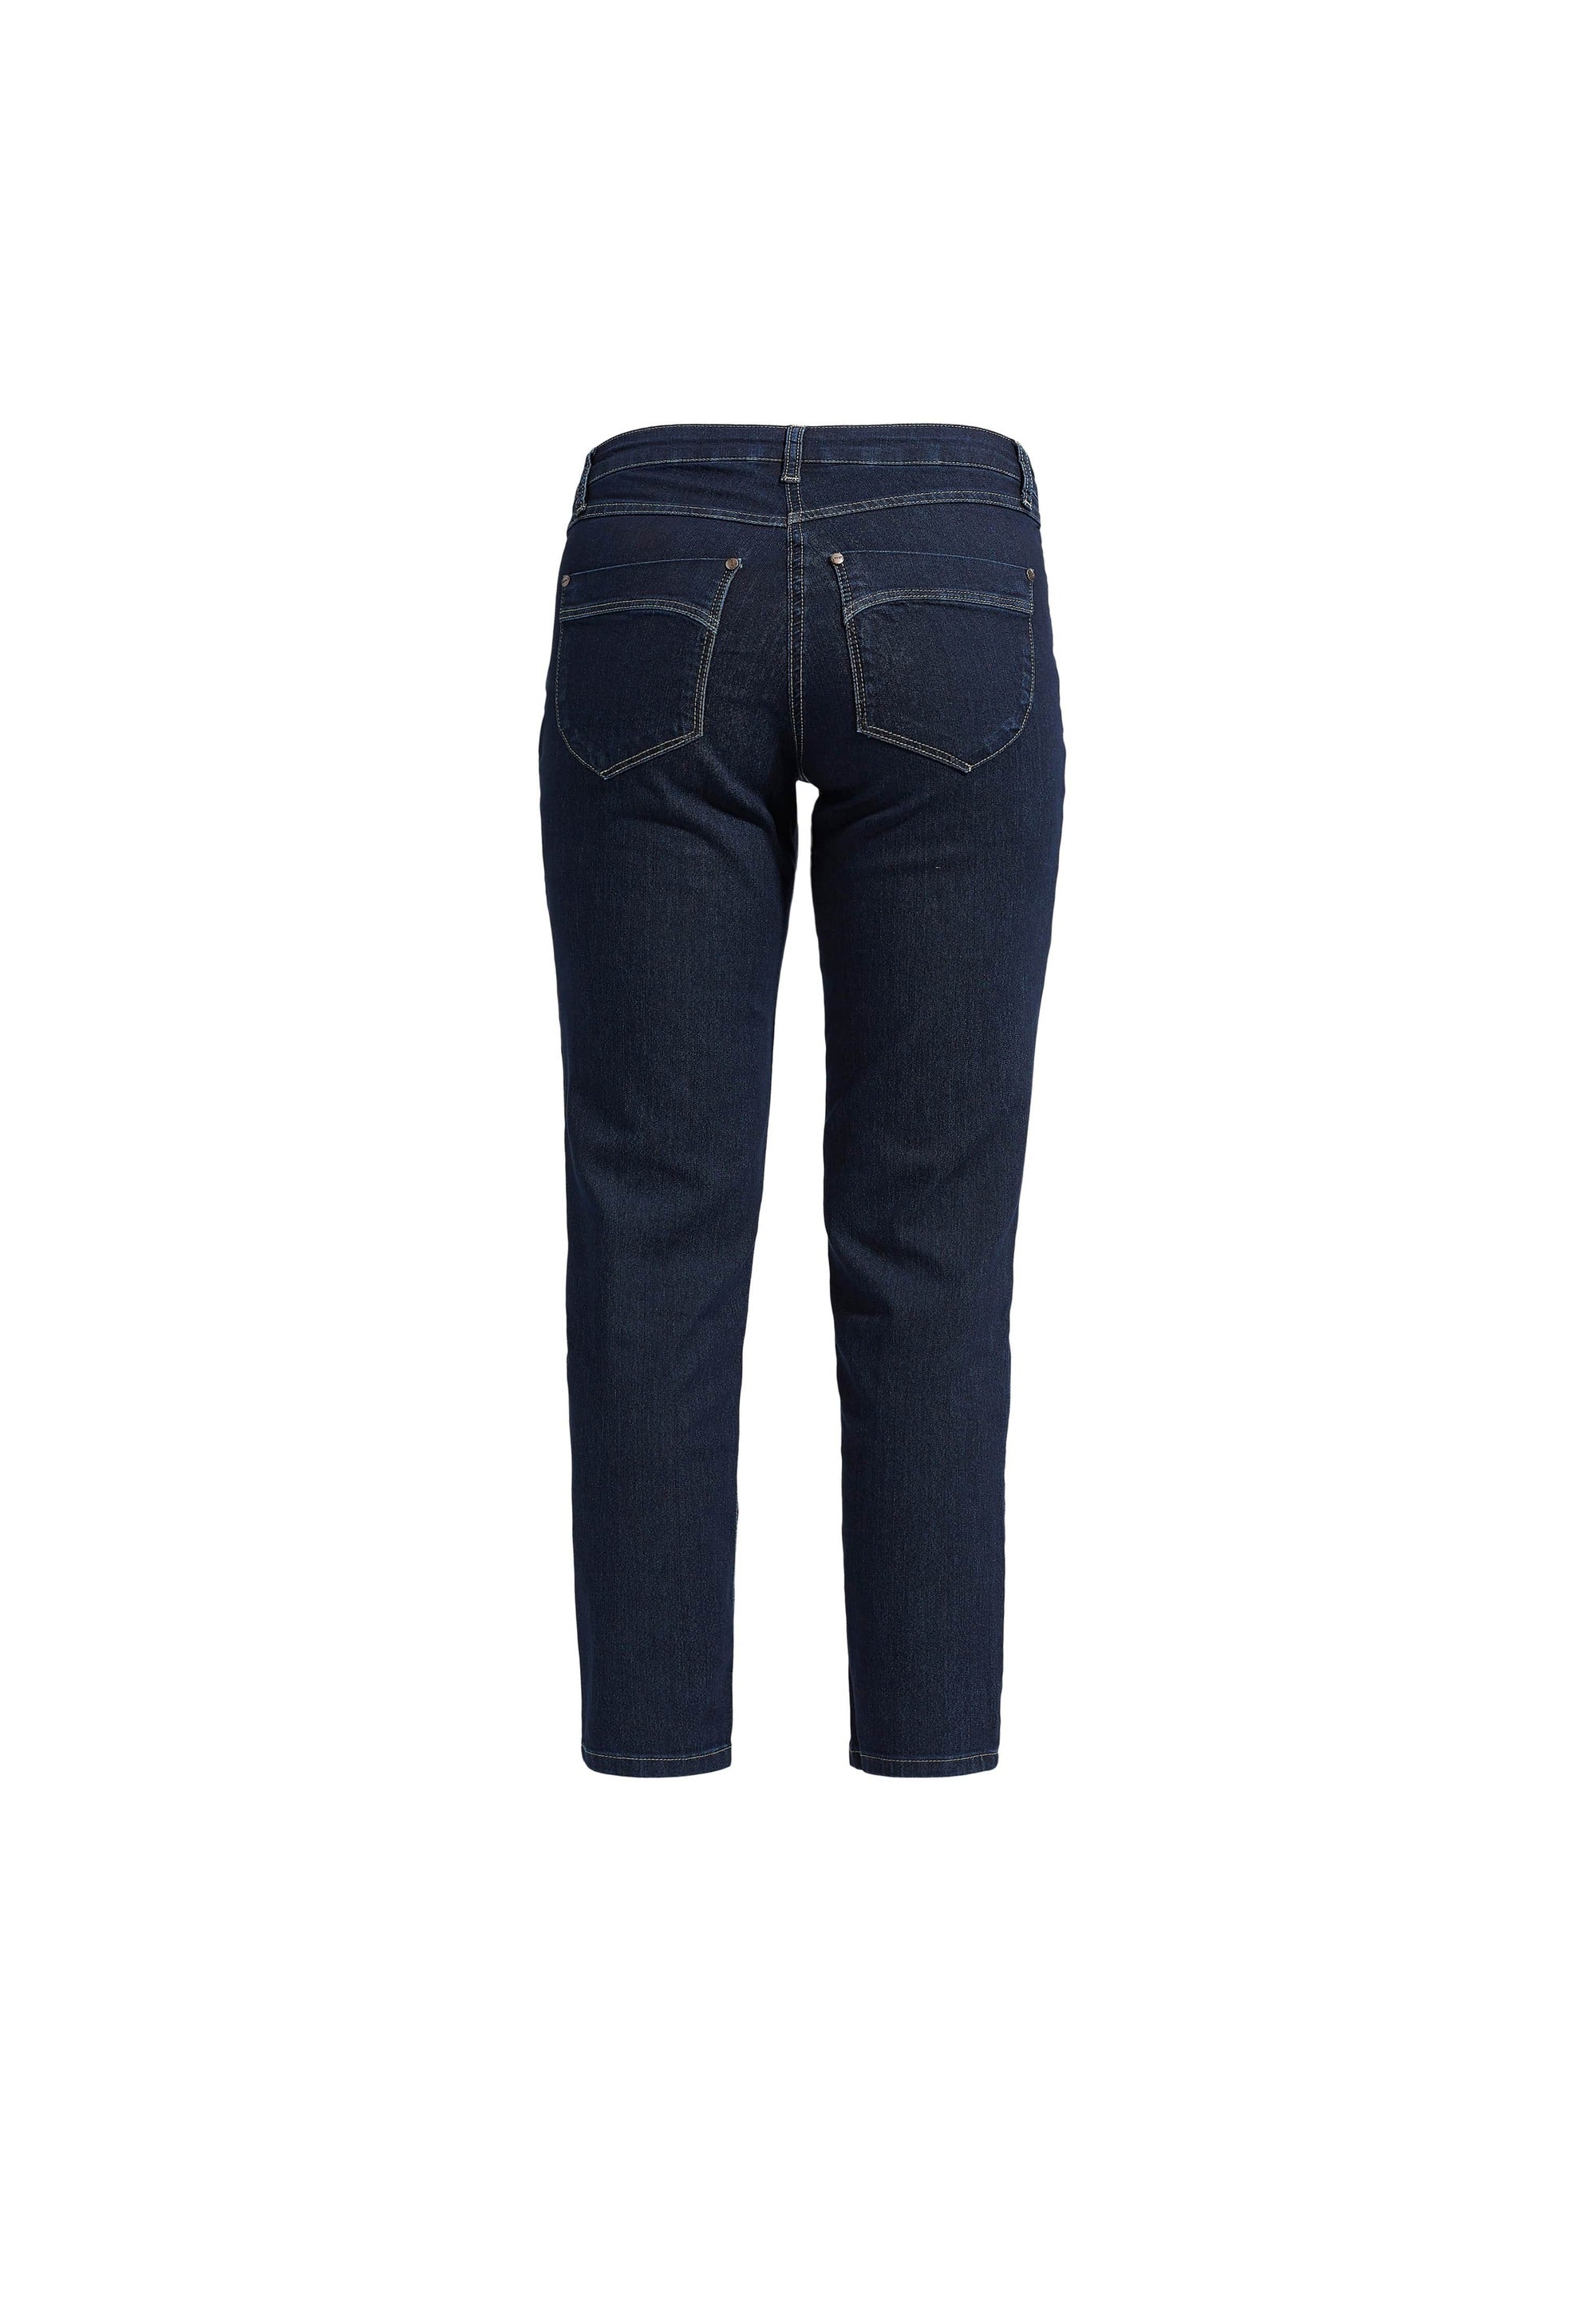 LAURIE  Charlotte Regular - Short Length Trousers REGULAR 49501 Dark Blue Denim